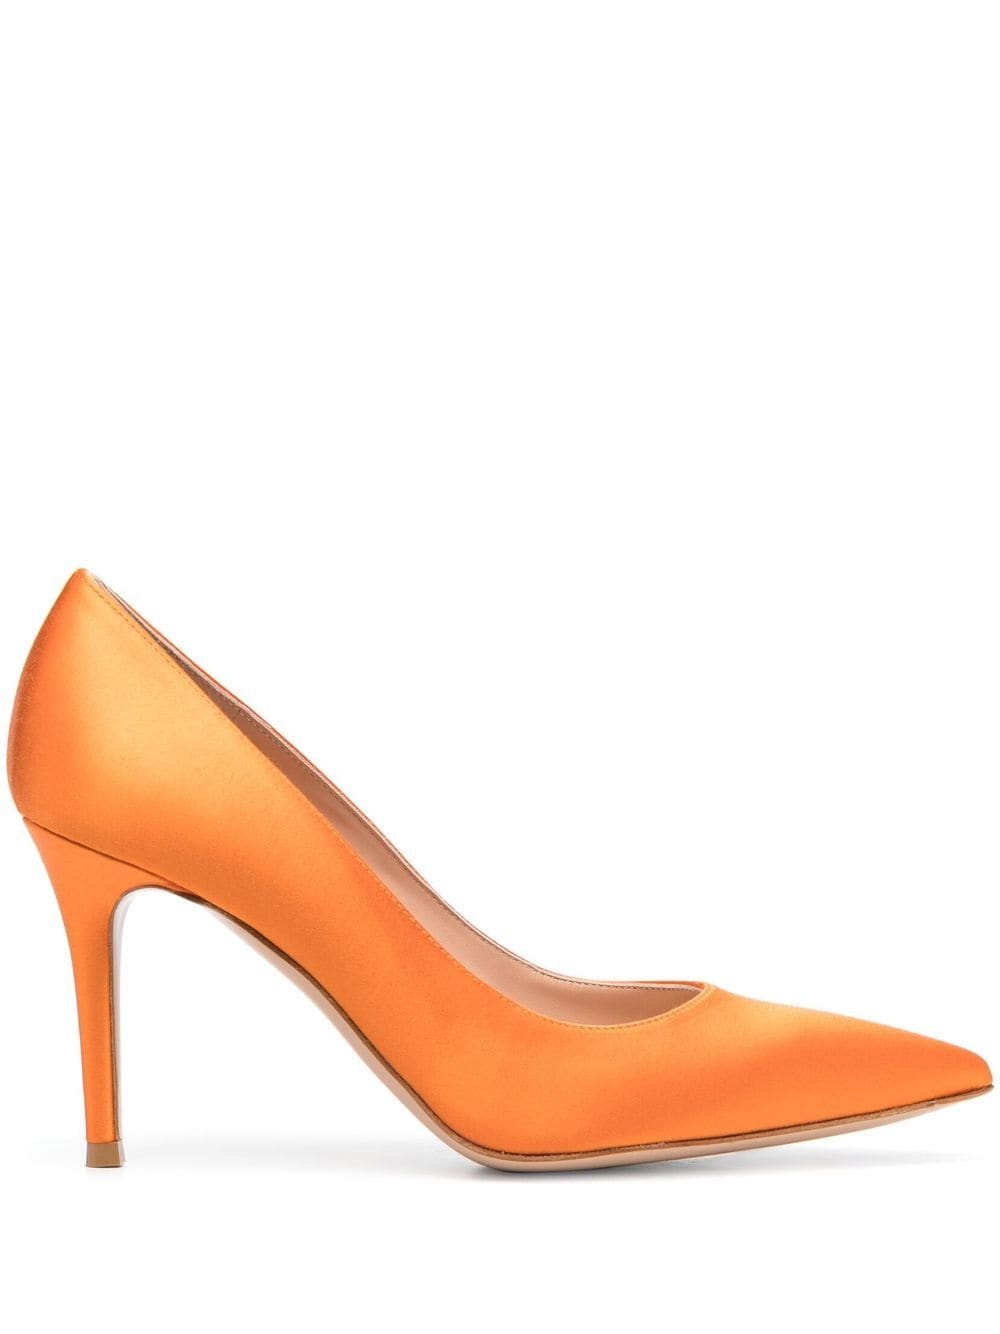 Gianvito Rossi 高跟鞋 In Orange